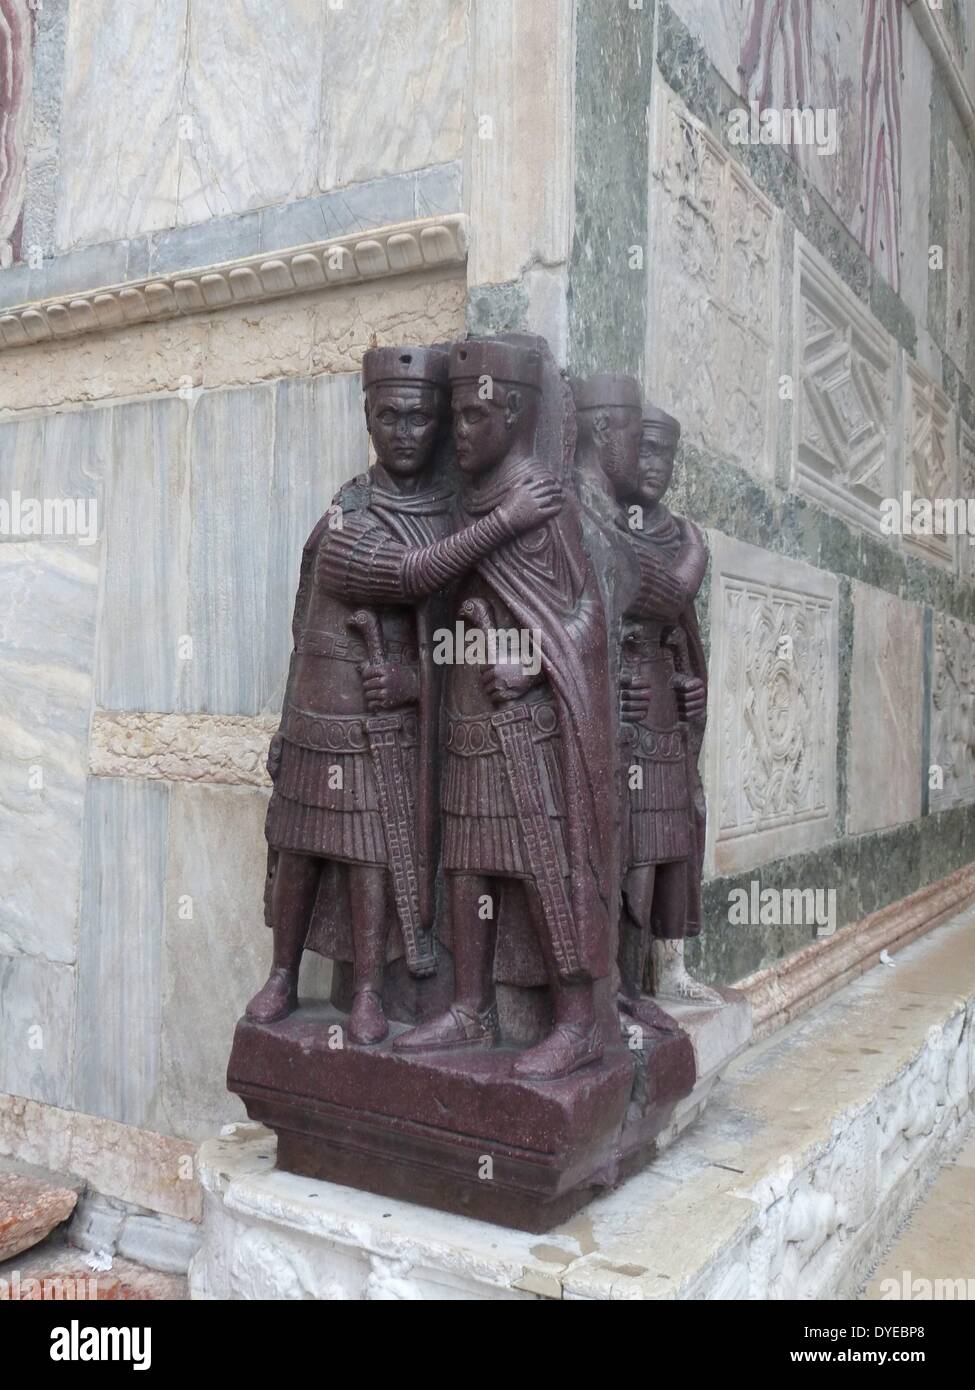 Le Portrait des quatre Tetrarchs. Une sculpture de porphyre groupe de quatre empereurs romains datant d'environ 300 AD. Fixé sur une façade d'angle de la Basilique St Marc à Venise au Moyen Age. Venise. Italie 2013 Banque D'Images